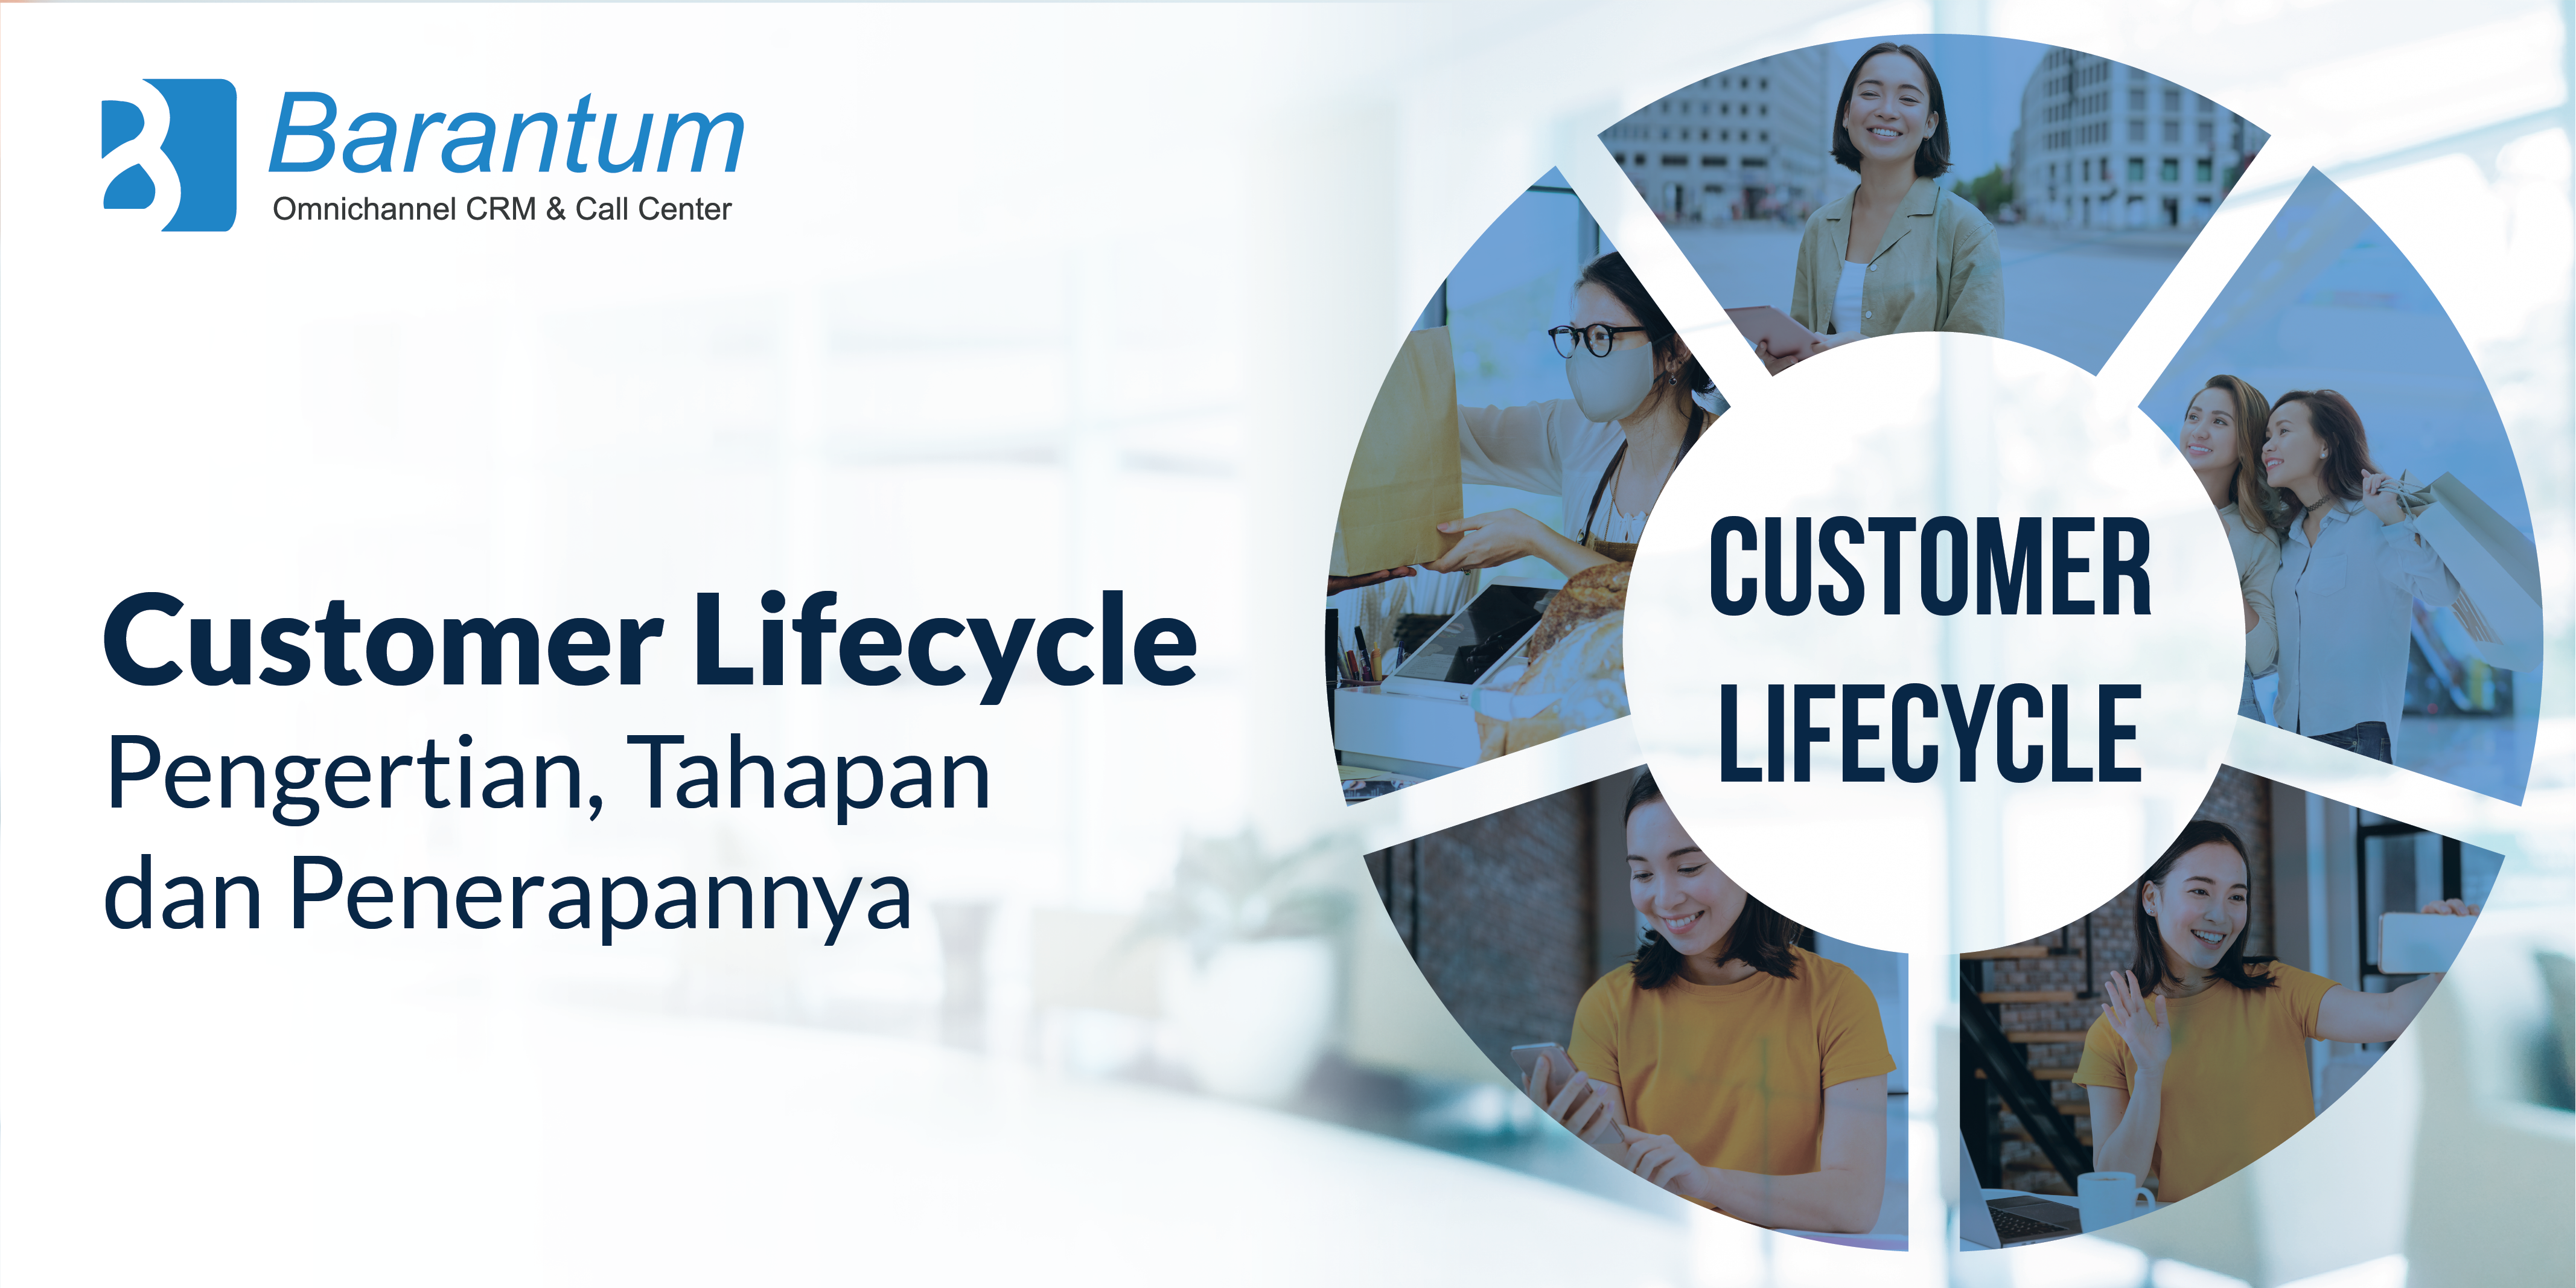 customer lifecycle adalah